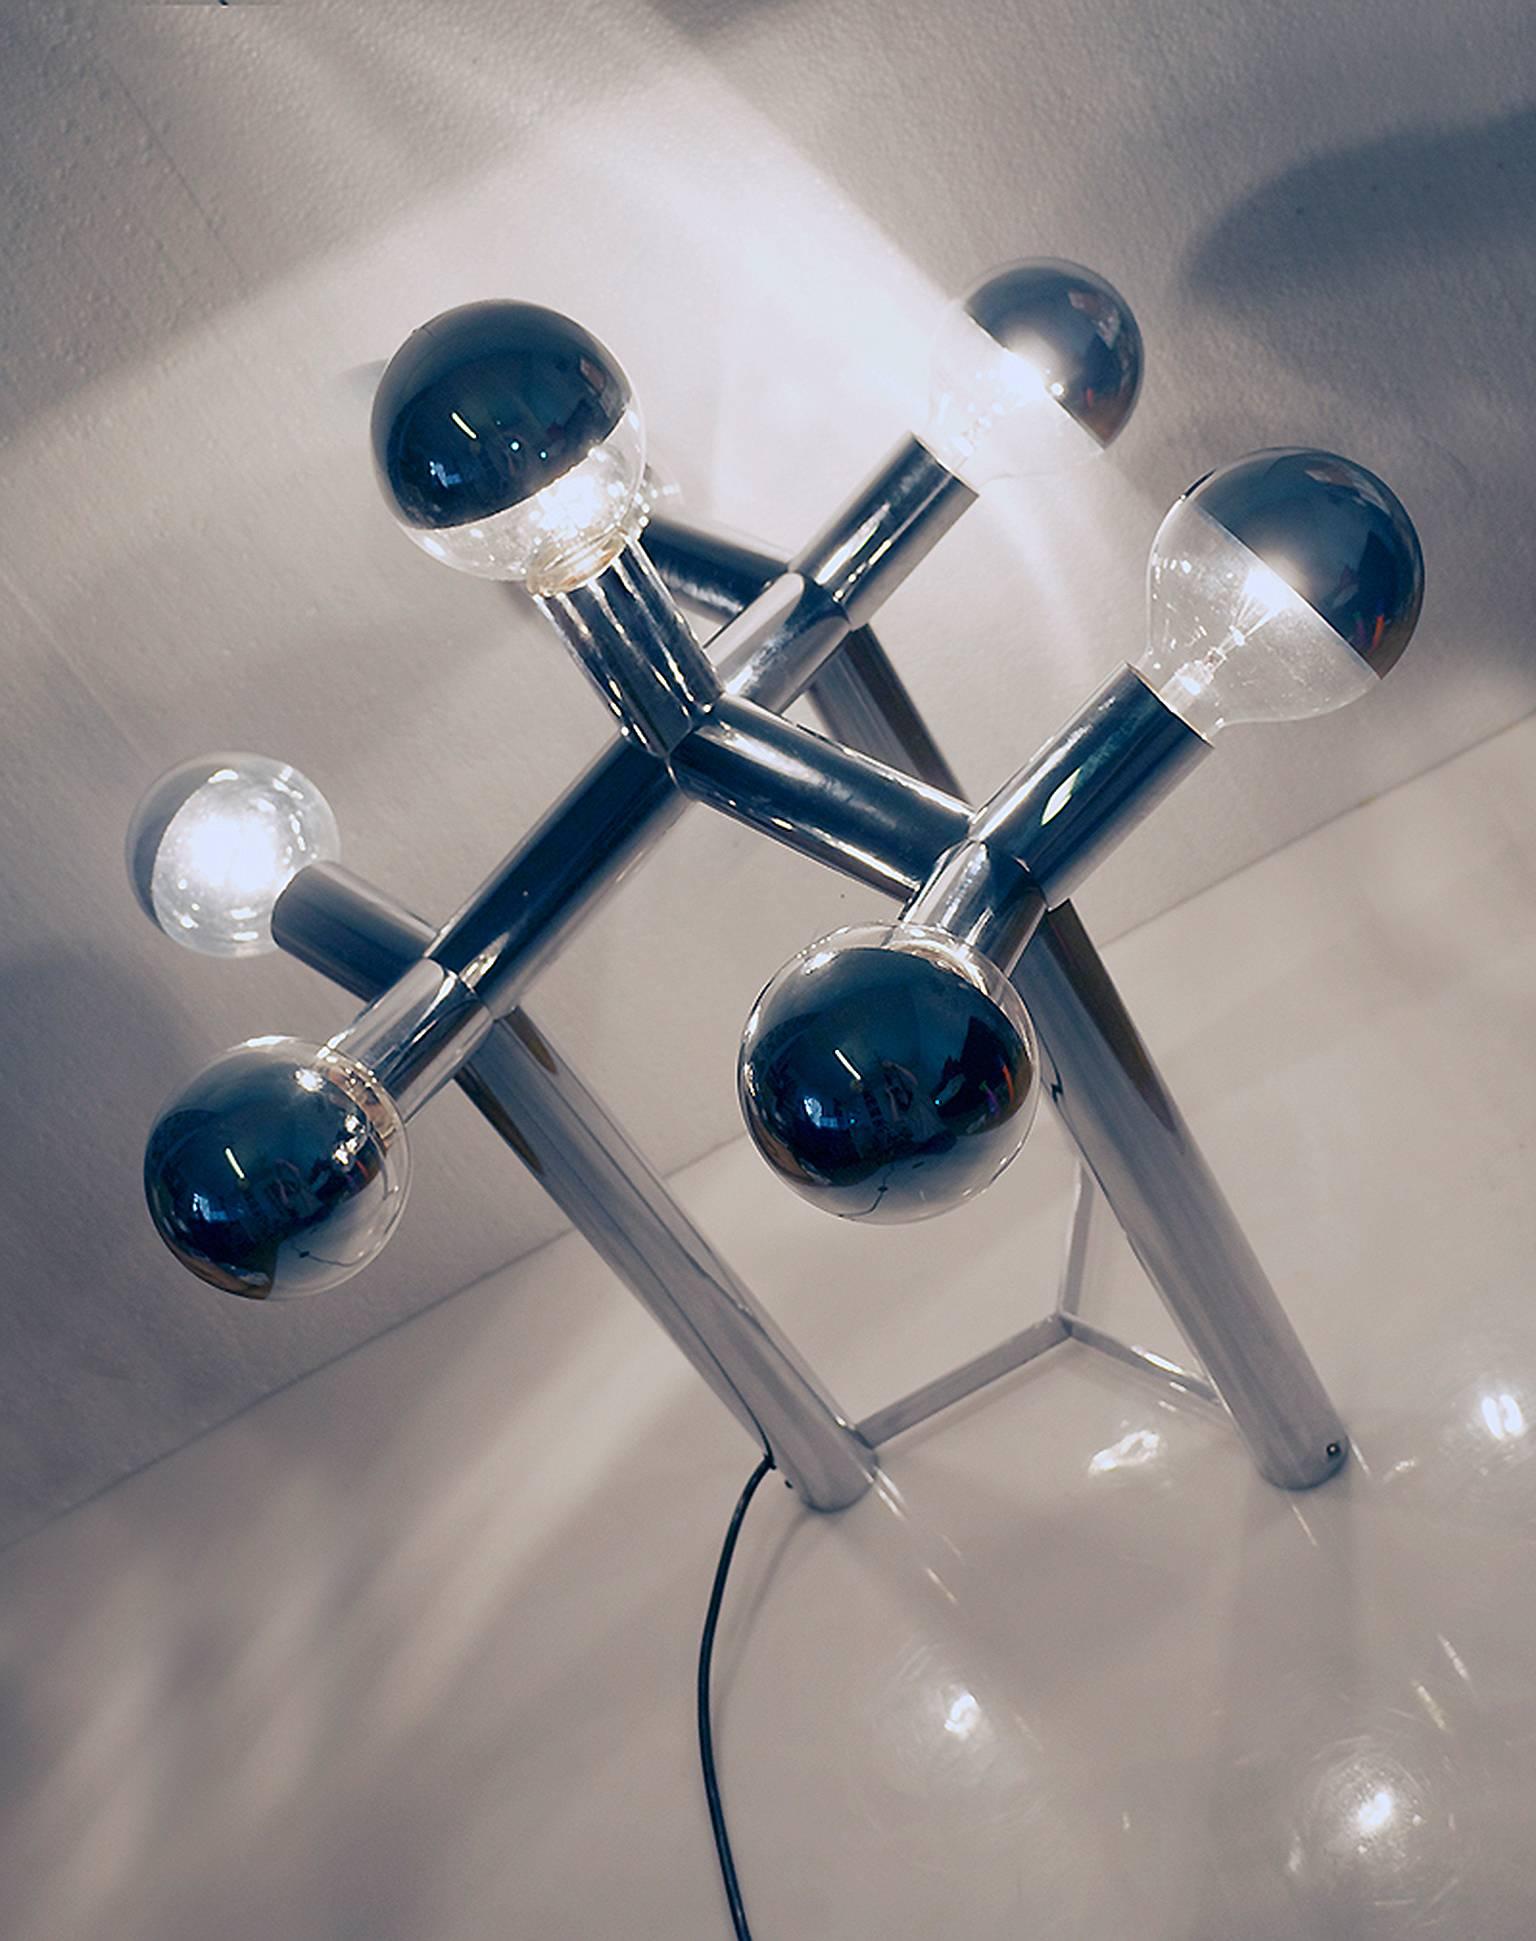 Chrome Atomic Lamp Lichtstruktur by Robert Haussmann, Swiss Lamp International